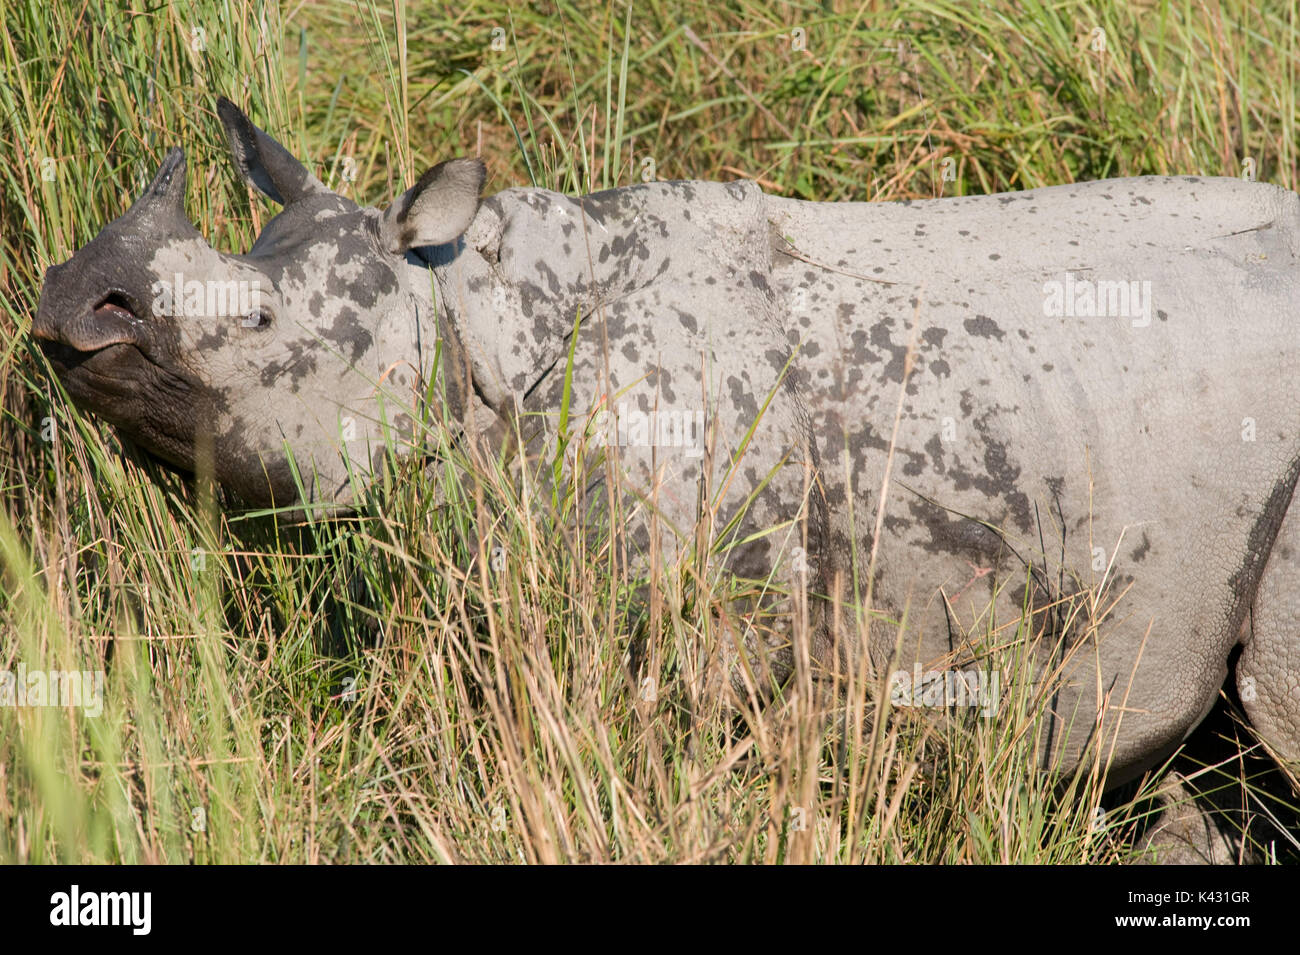 Rhinocéros indien, Rhinoceros unicornis, dans l'herbe haute, le parc national de Kaziranga, Assam, Inde, patrimoine mondial et l'UICN UICN Catégorie II Site, 2004 Disparition Banque D'Images